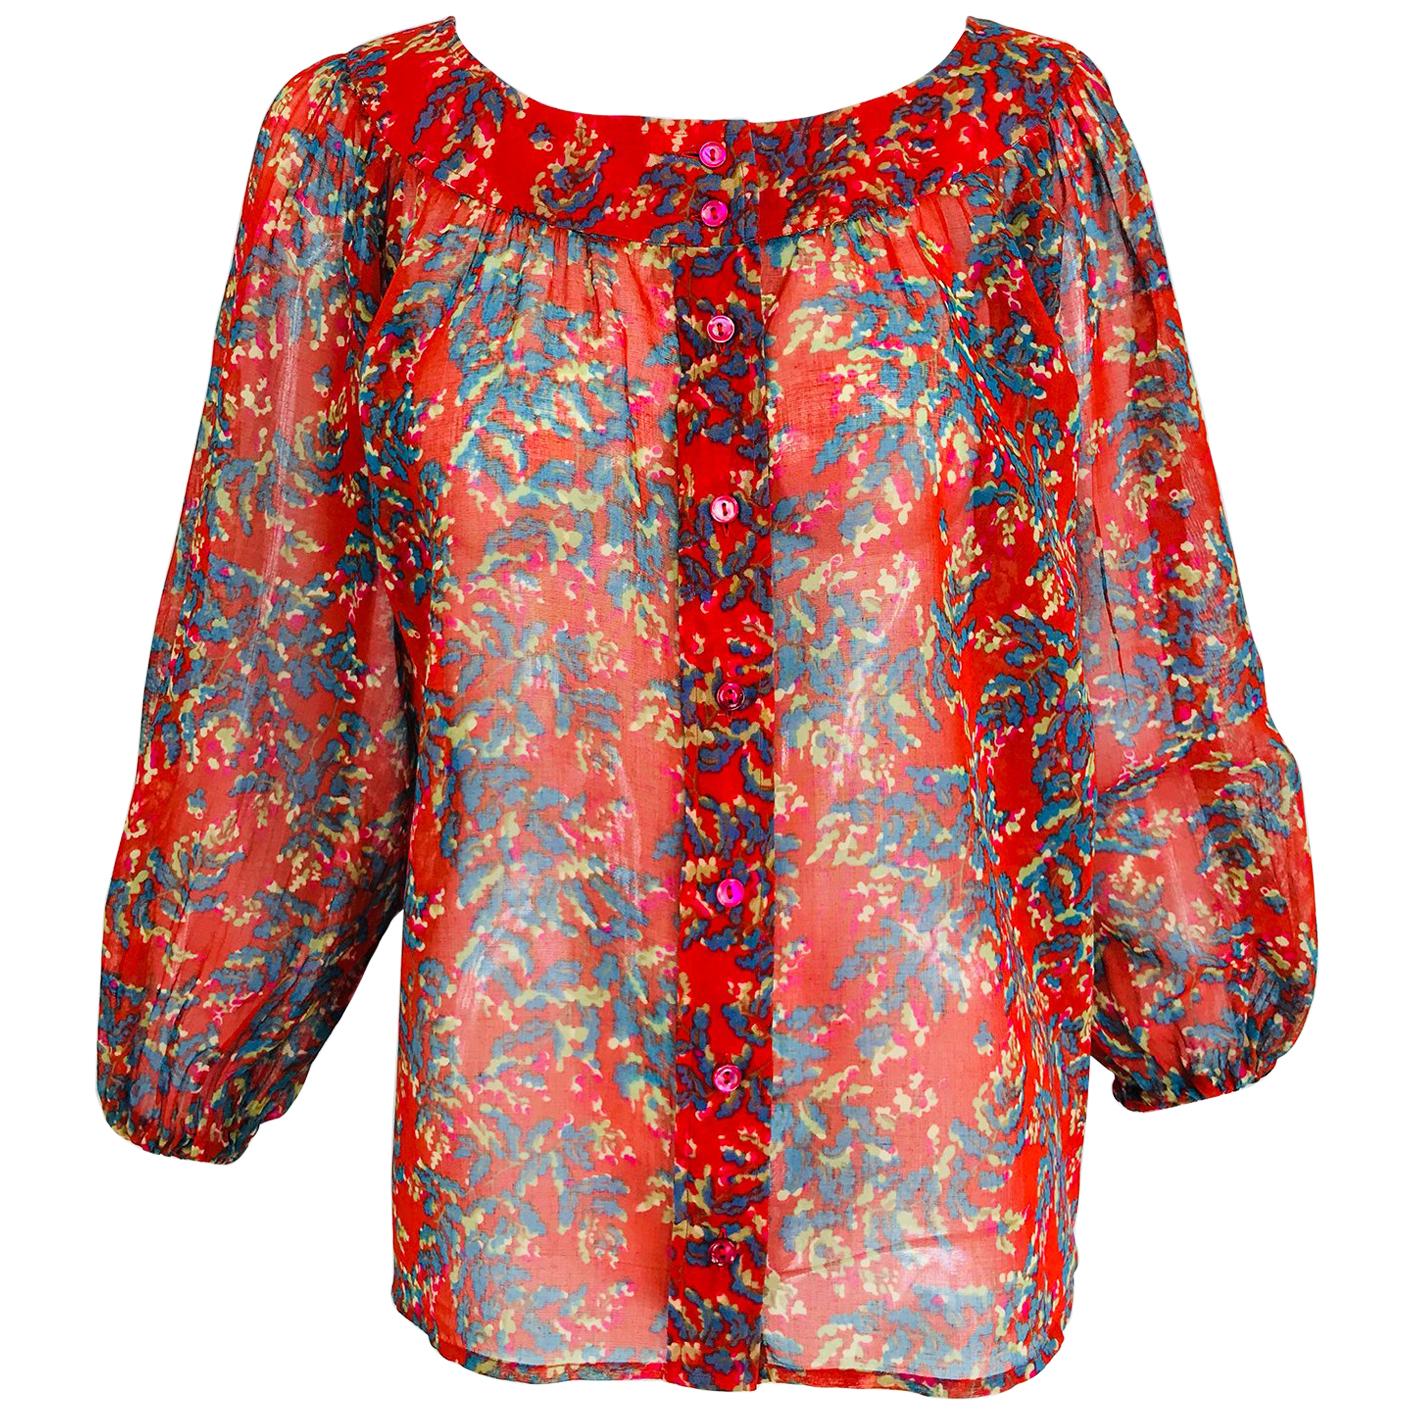 Yves Saint Laurent sheer floral cotton peasant blouse 1970s